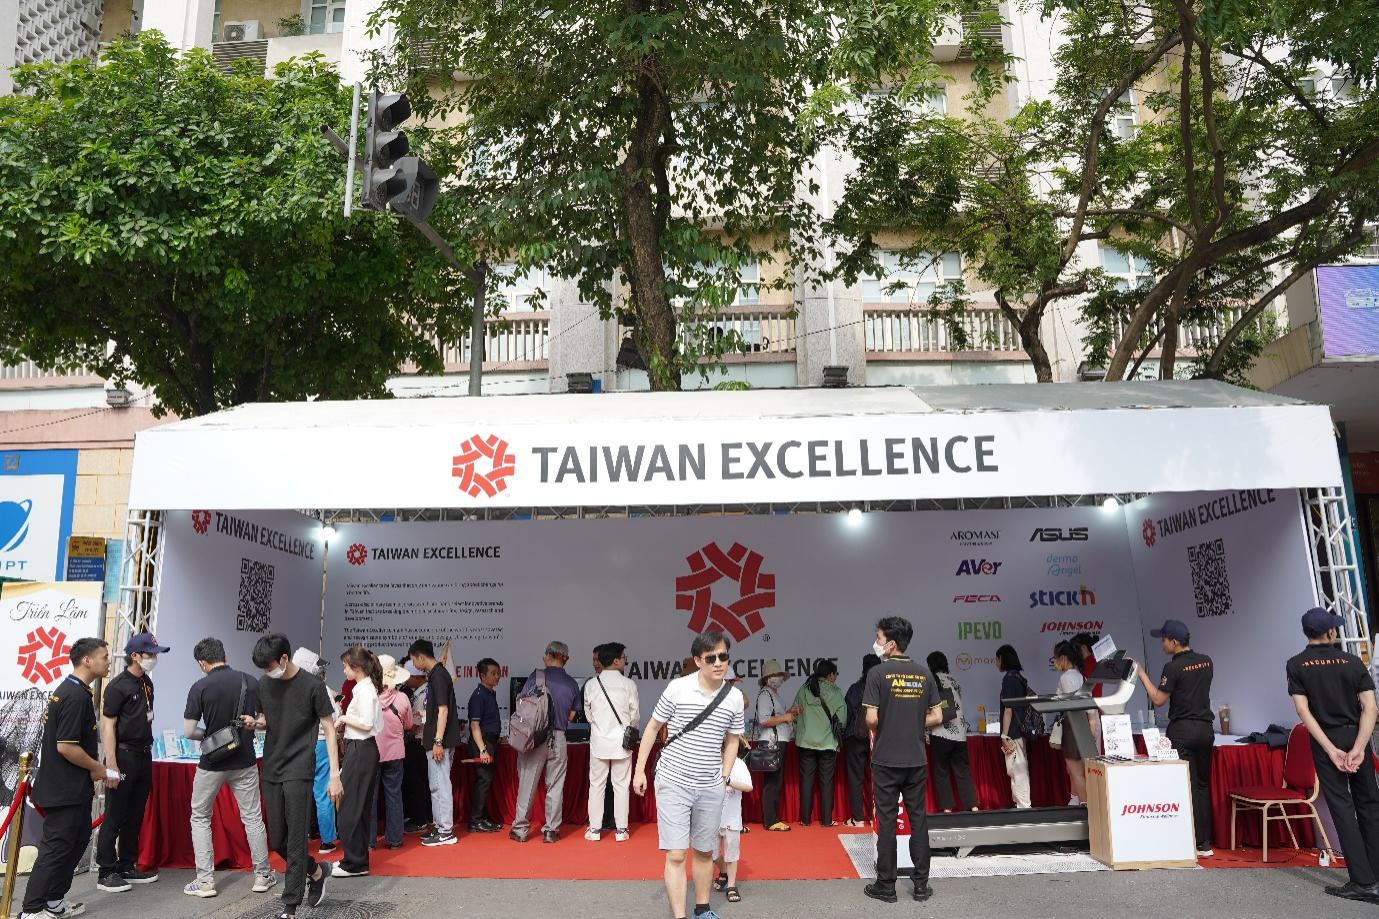 Triển lãm gian hàng Taiwan Excellence - Không gian trưng bày văn hóa, ẩm thực, công nghệ hiện đại, thu hút khách tham quan - 1